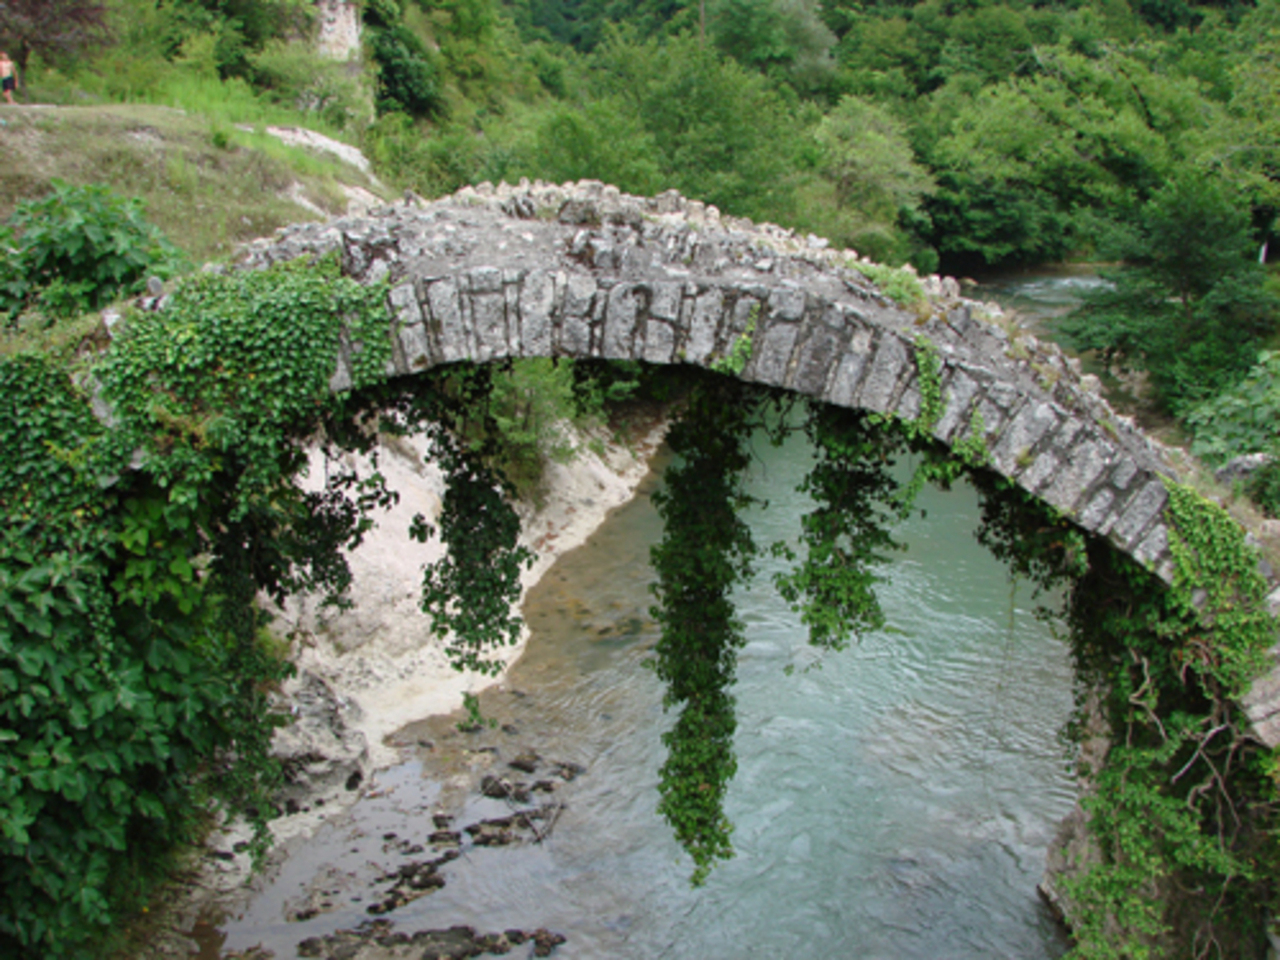 Беслетский мост - единственное древнее абхазское сооружение подобного рода. Он хорошо сохранился до наших дней и по праву считается замечательным произведением строительного искусства средневековой Абхазии. Свод моста, представляющего однопролётную каменную арку длиной 13 м, сложен из квадратных плит известняка. Lisa_g